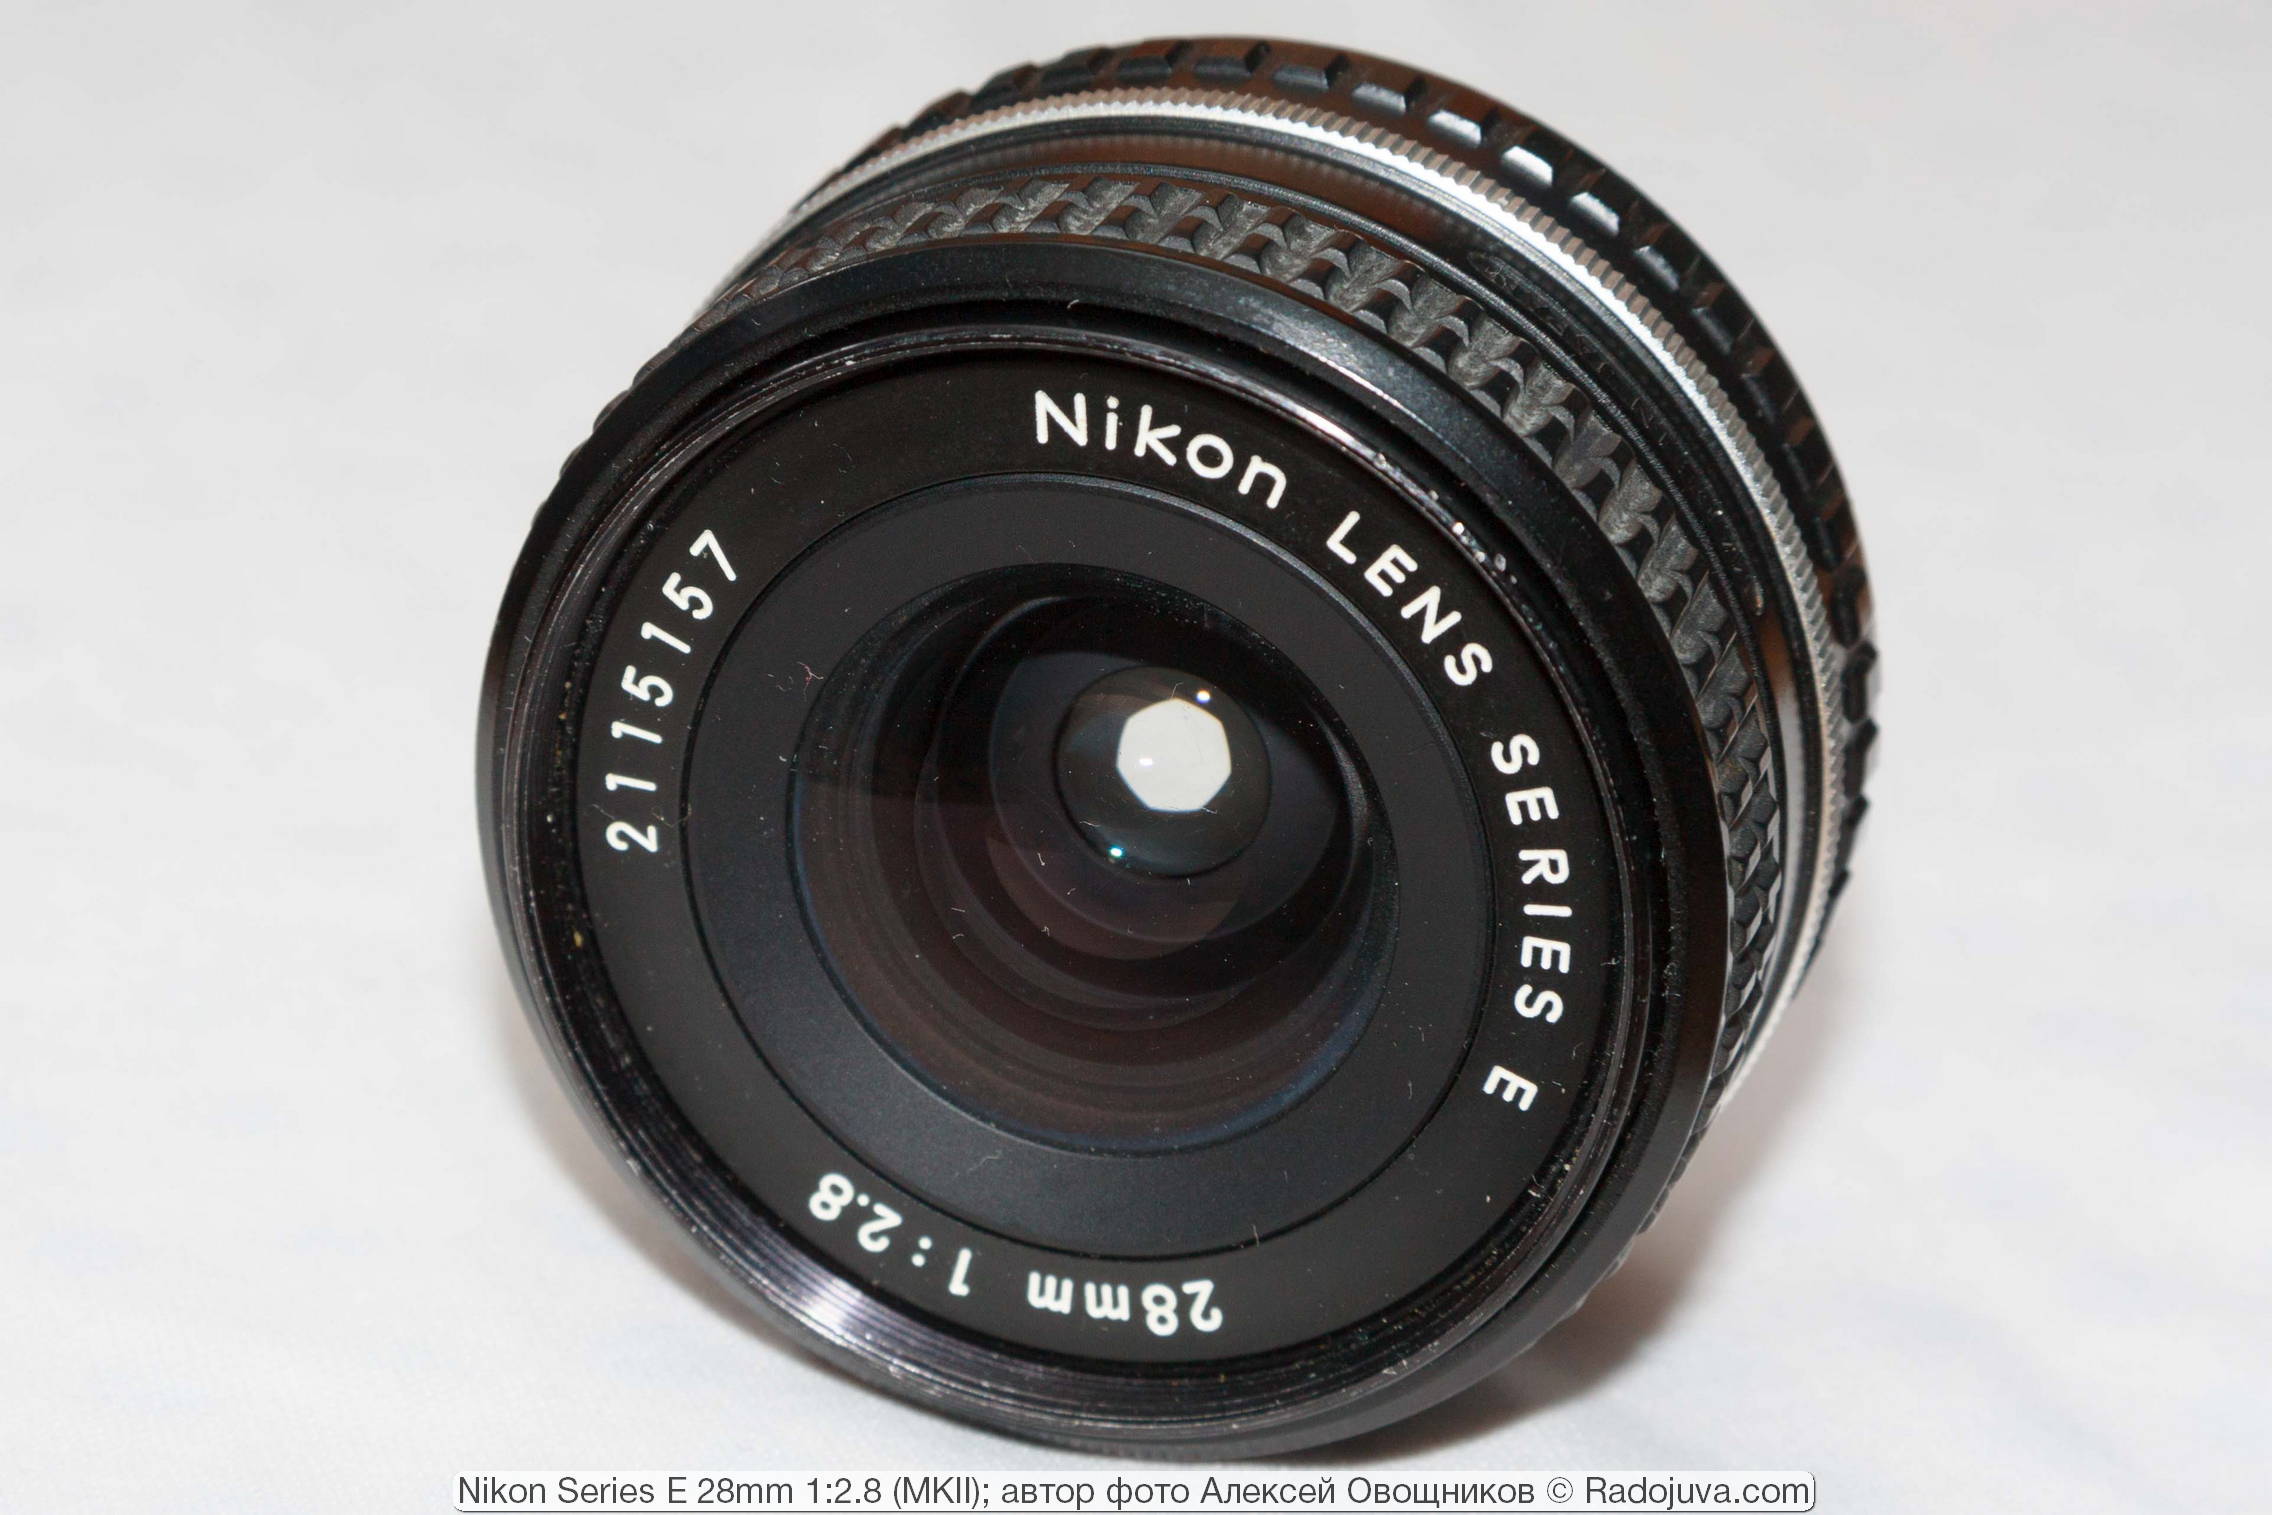 Nikon Serie E 28mm 1:2.8 MKII